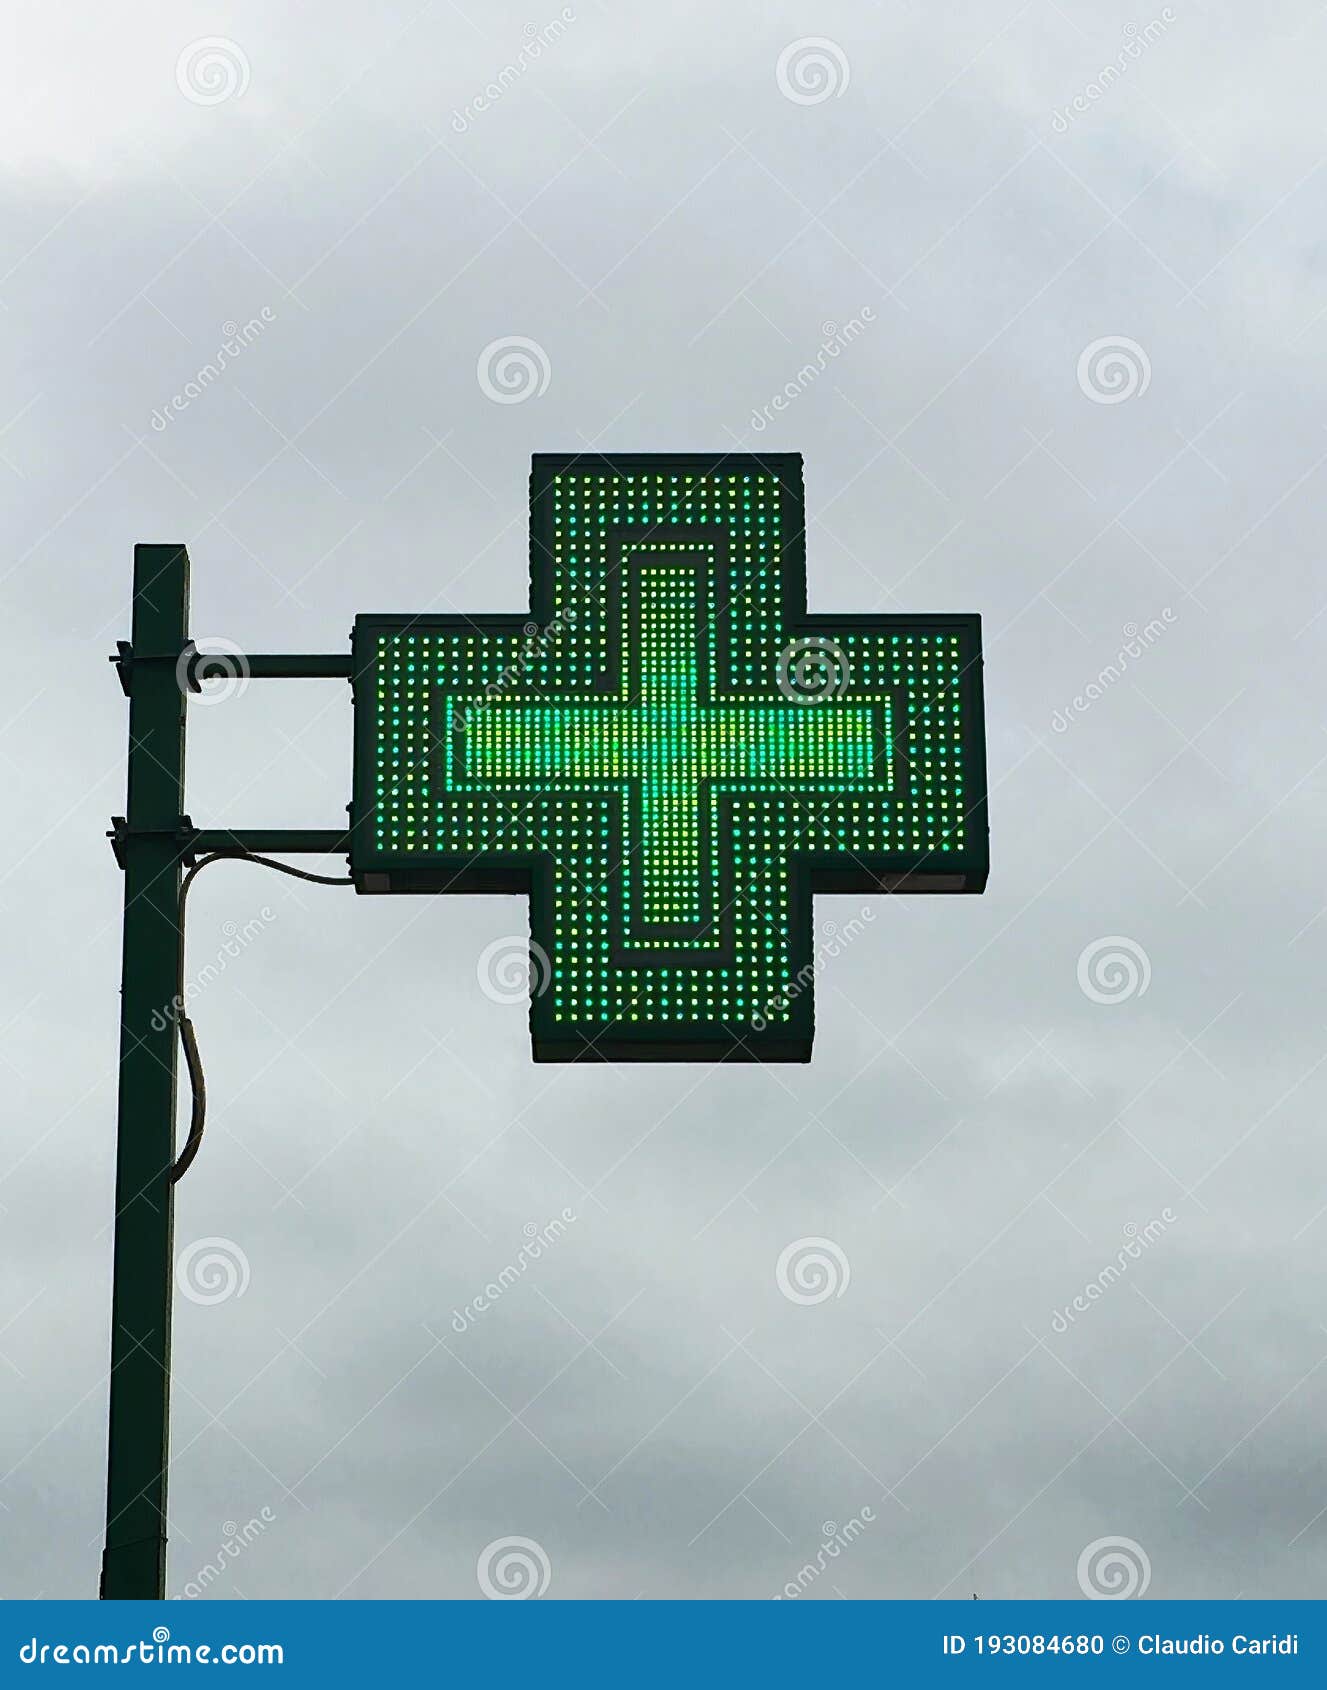 european green cross pharmacy store sign: farmacia. pharmacy sign.